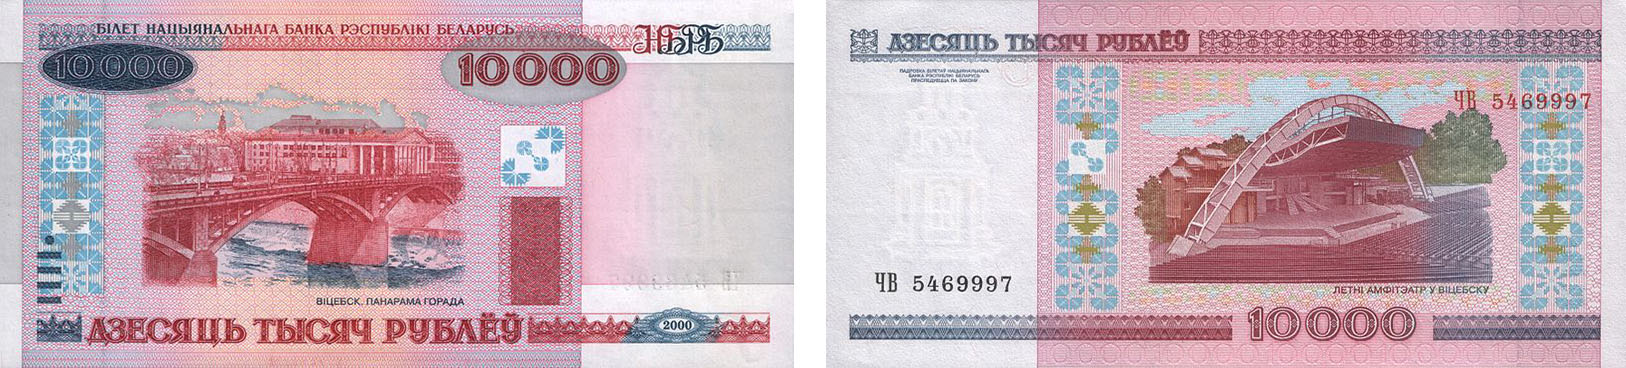 10000 рублей 2000 года